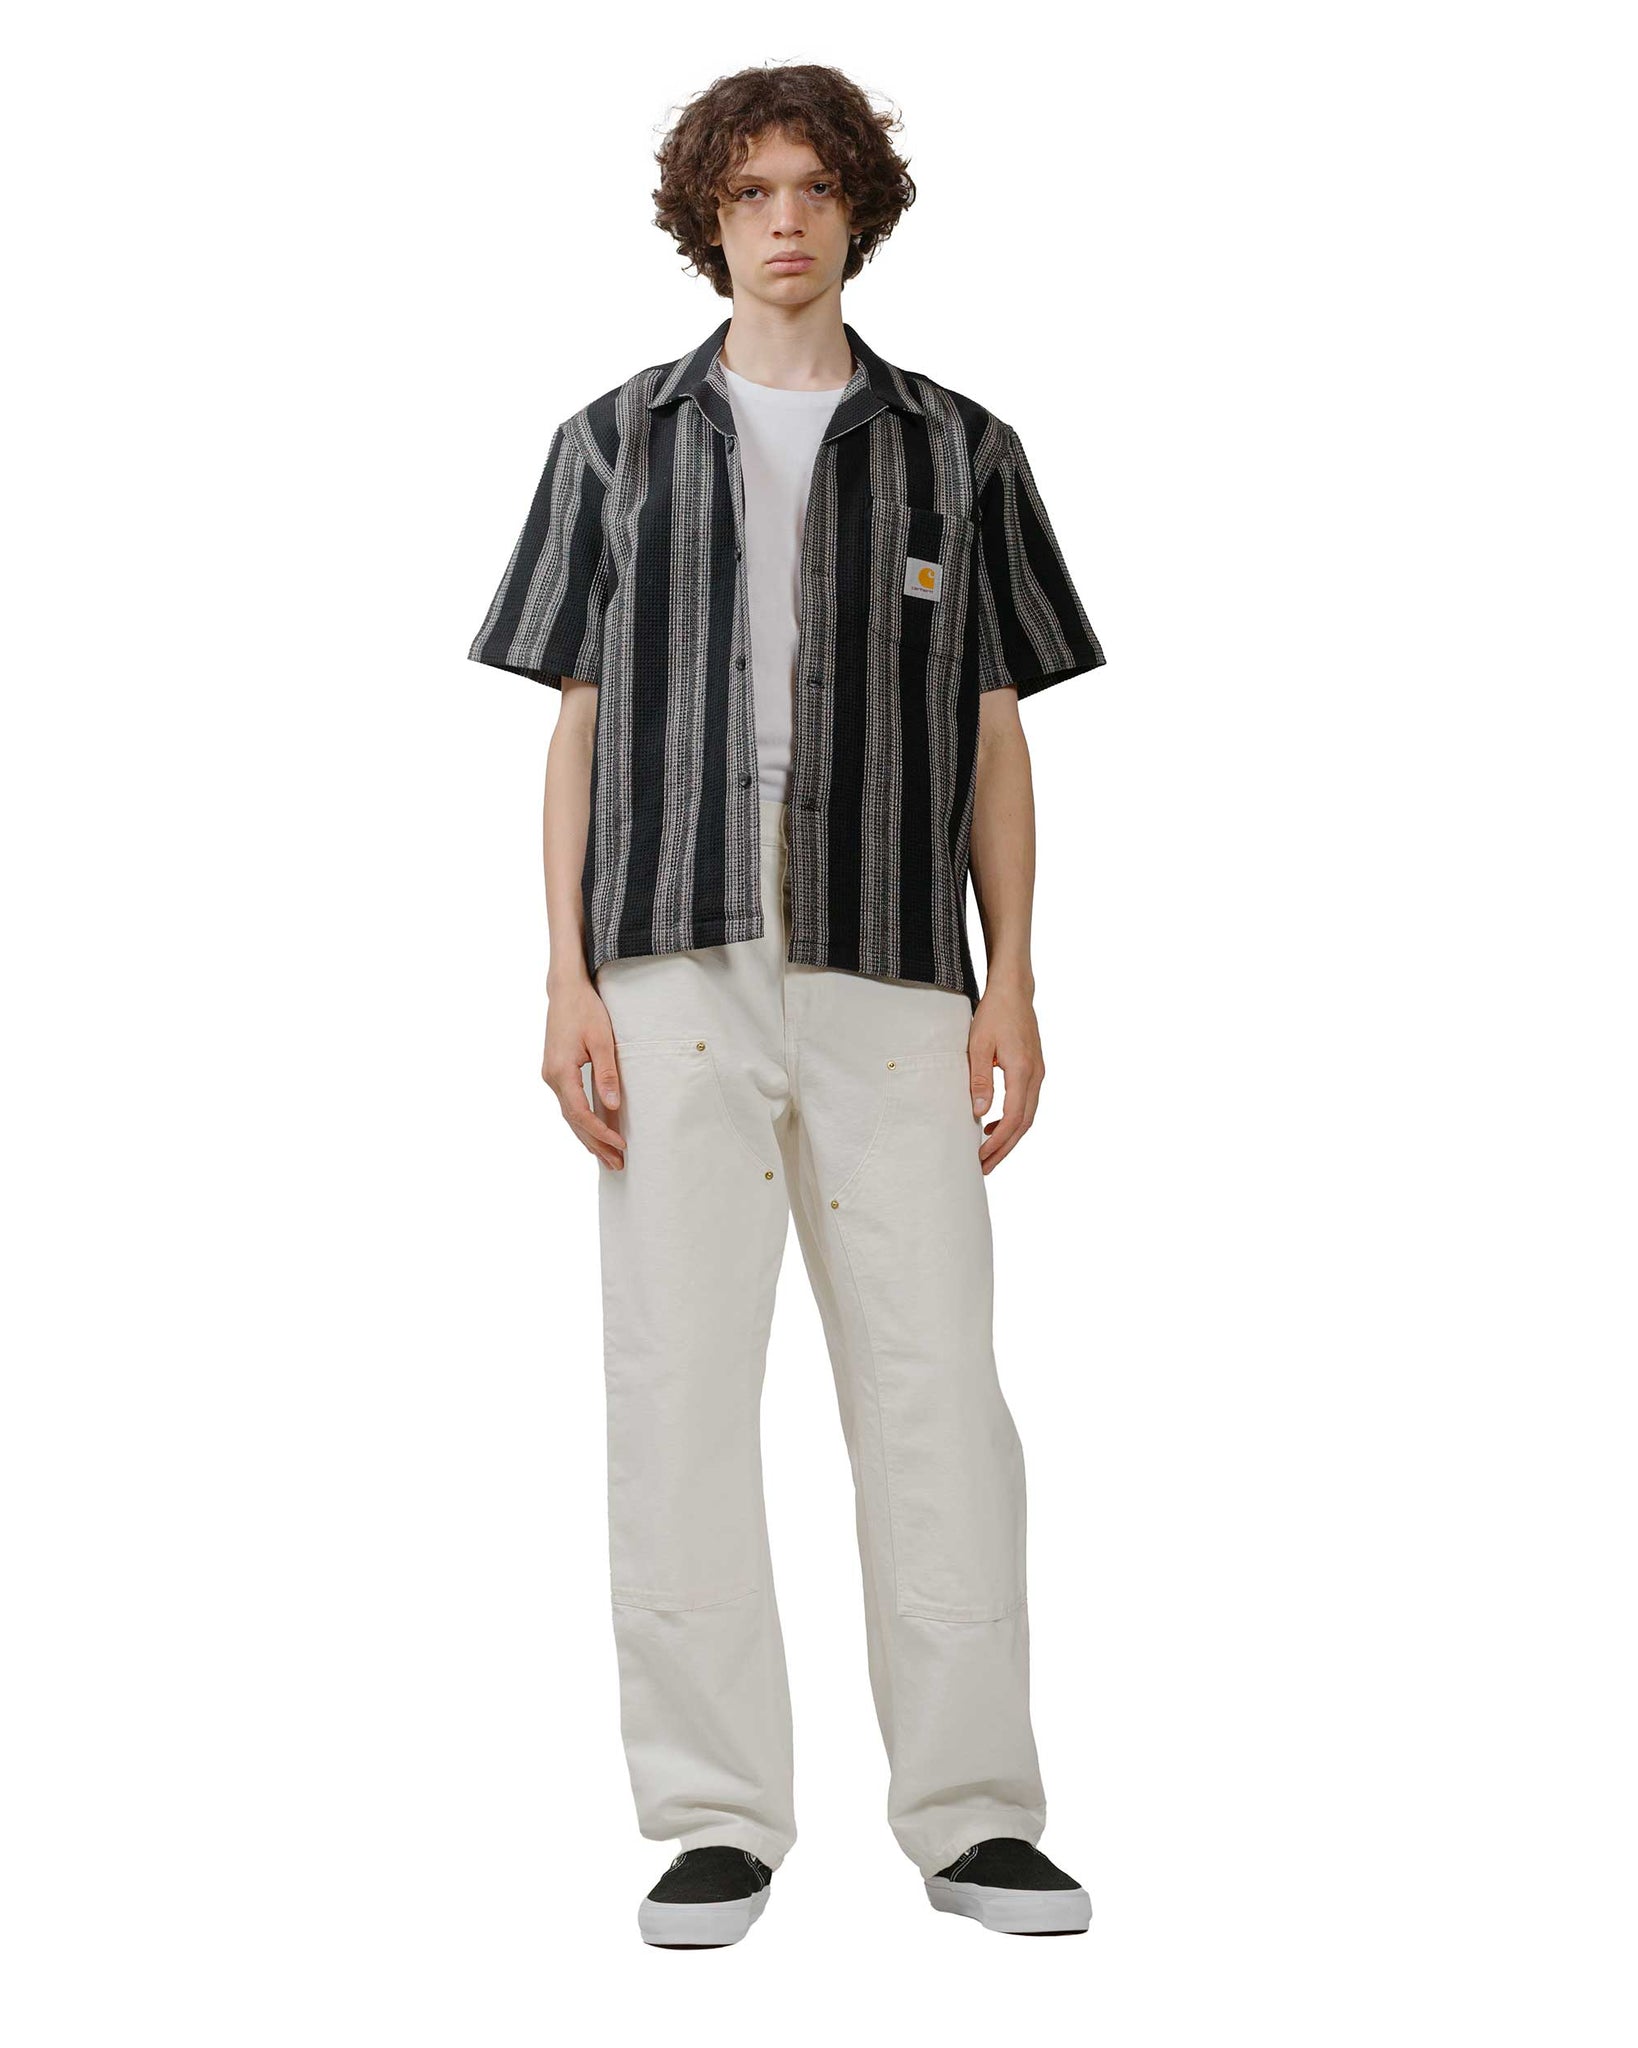 Carhartt W.I.P. Dodson Stripe Shirt Black model full